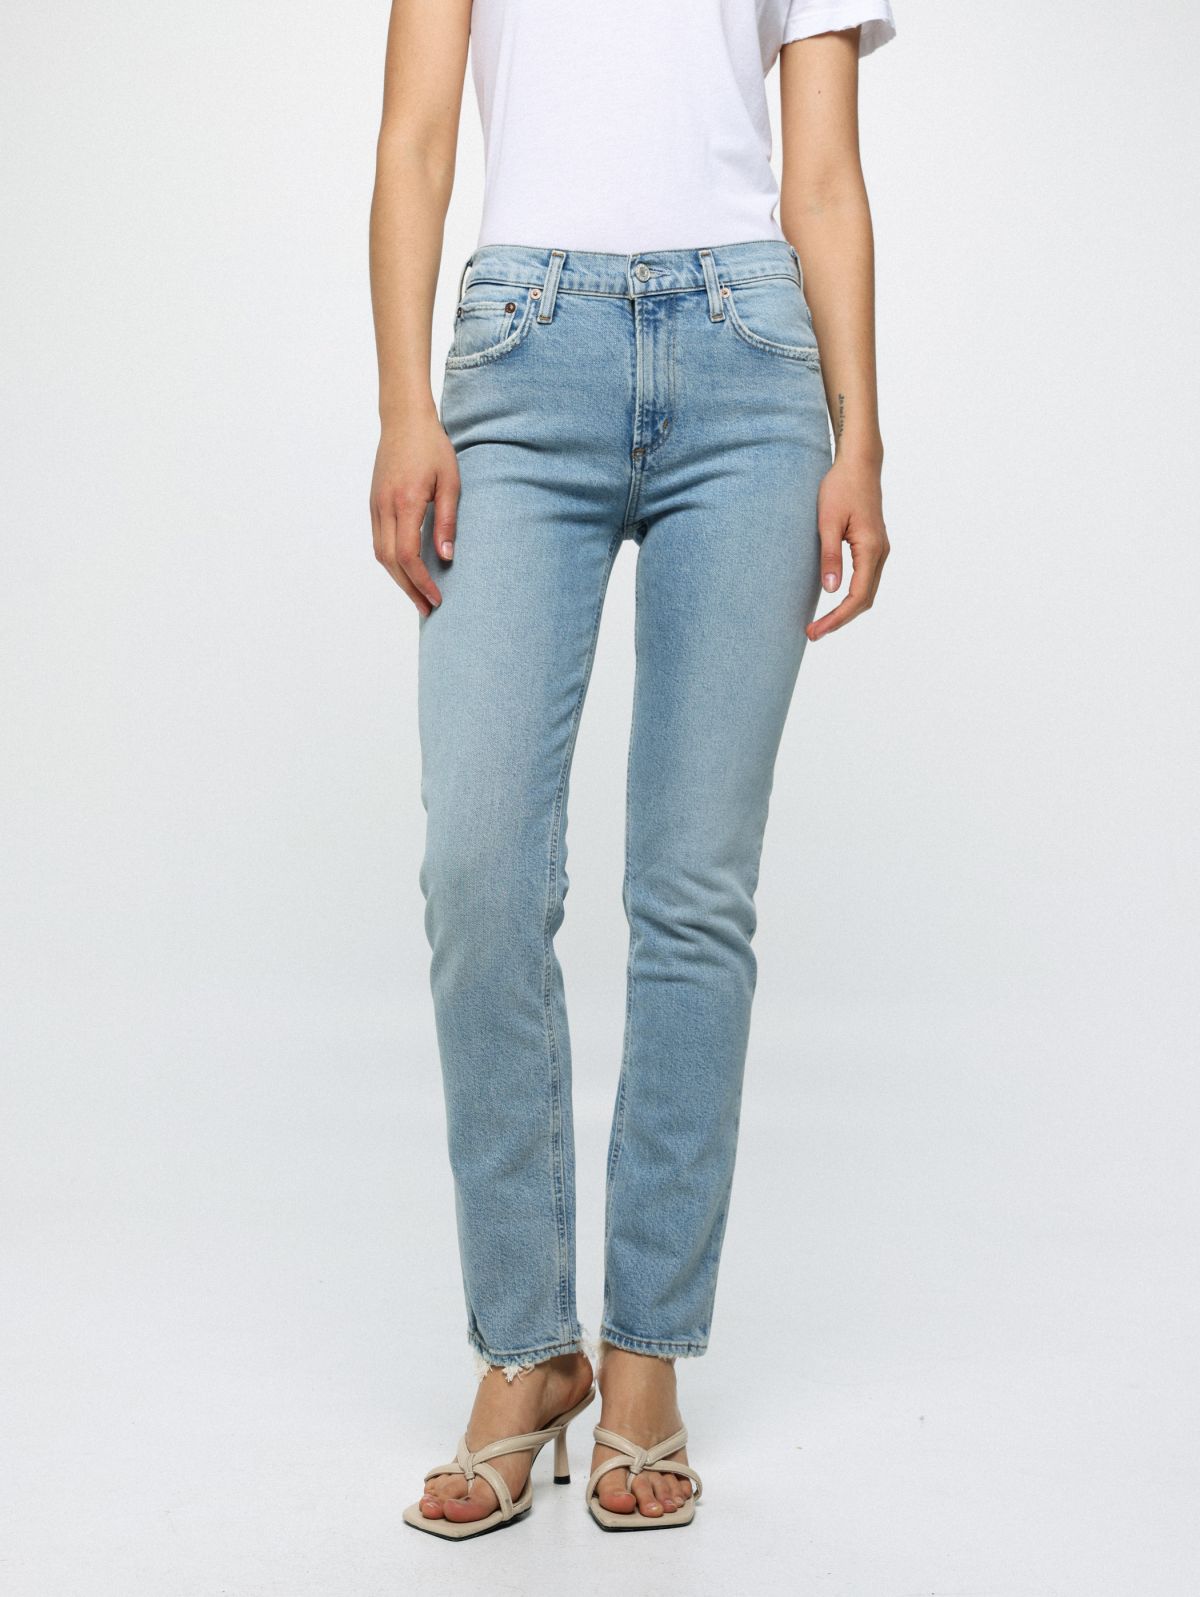  ג'ינס בגזרת סלים נמוכה עם סיומת פרומה Lyle Low Rise Slim In Rift של AGOLDE